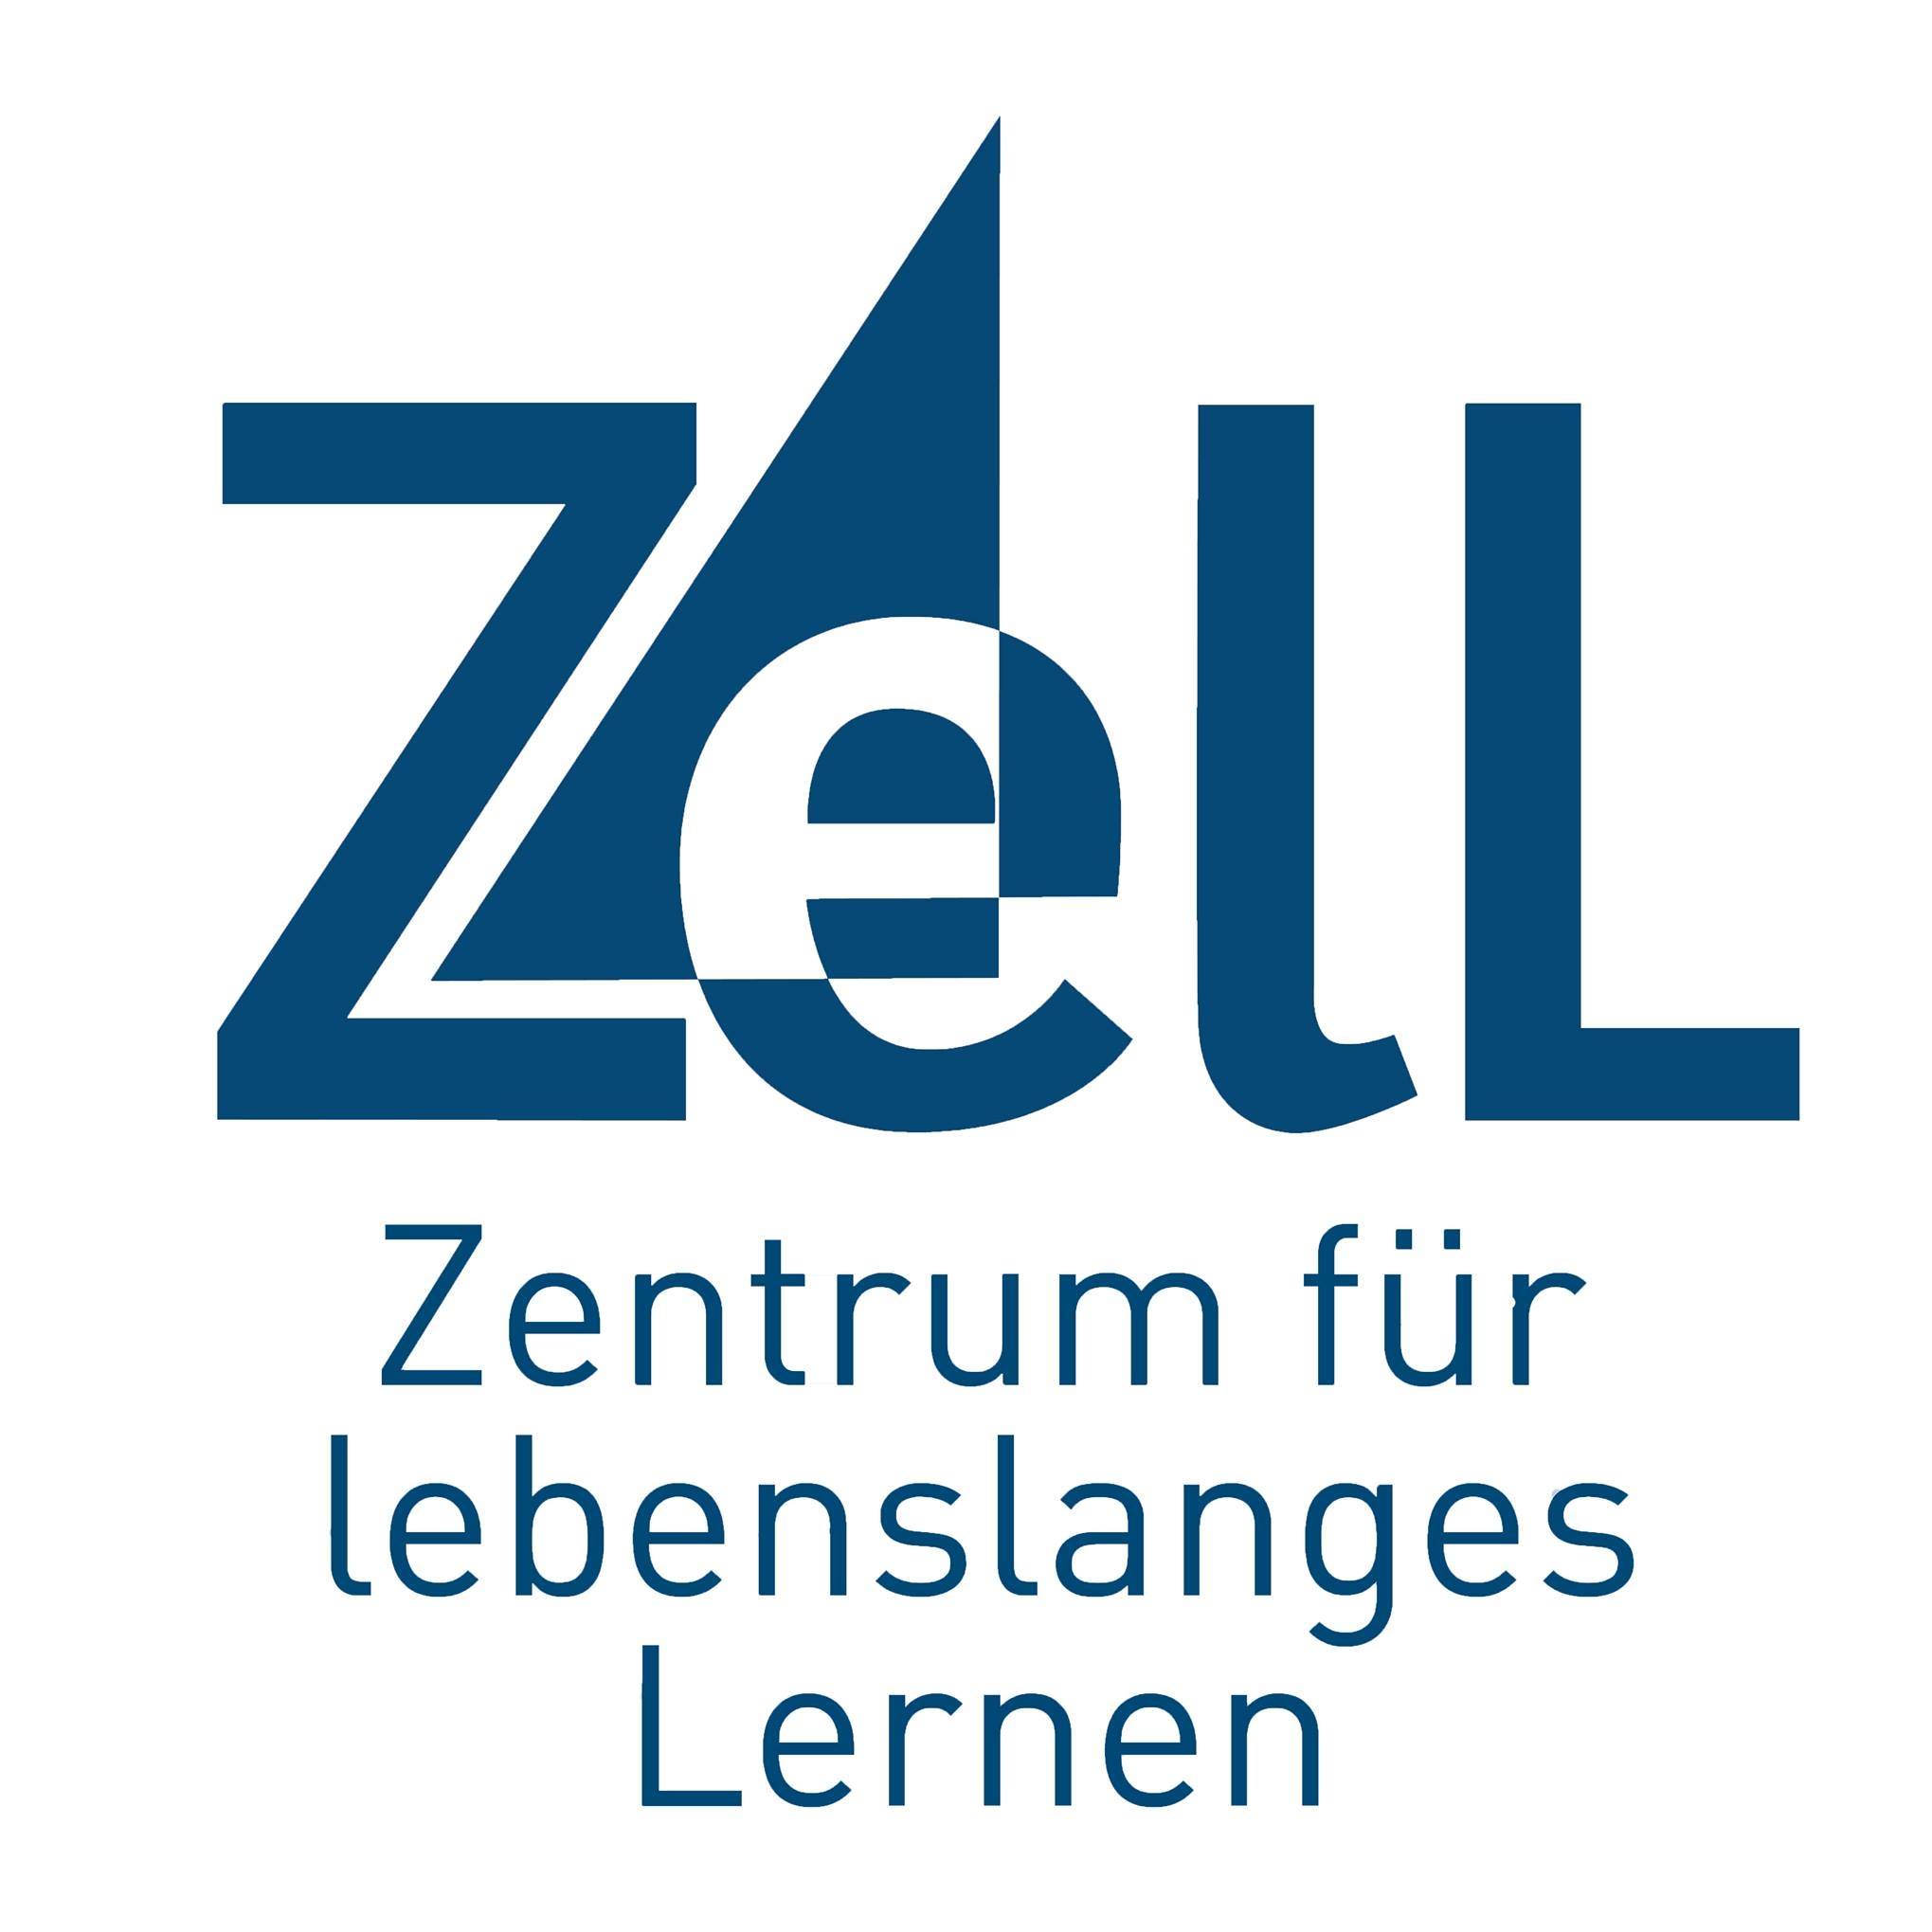 You are currently viewing Schlüsselkompetenzen-Programm der Universität des Saarlandes im Zentrum für lebenslanges Lernen (ZelL)